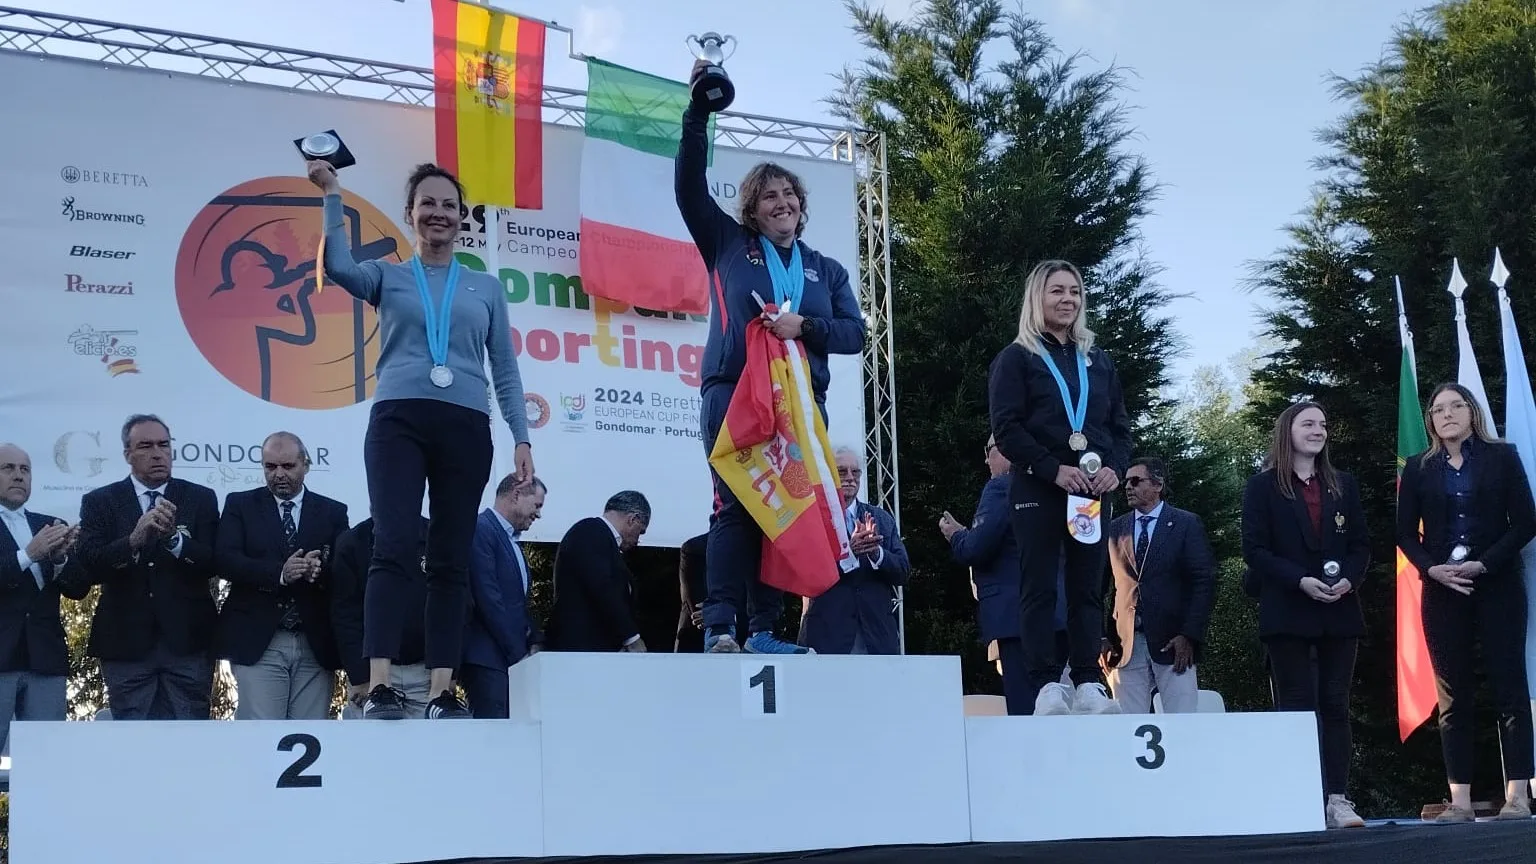 Beatriz Laparra conquista por quinto año consecutivo el Campeonato de Europa de Compak Sporting